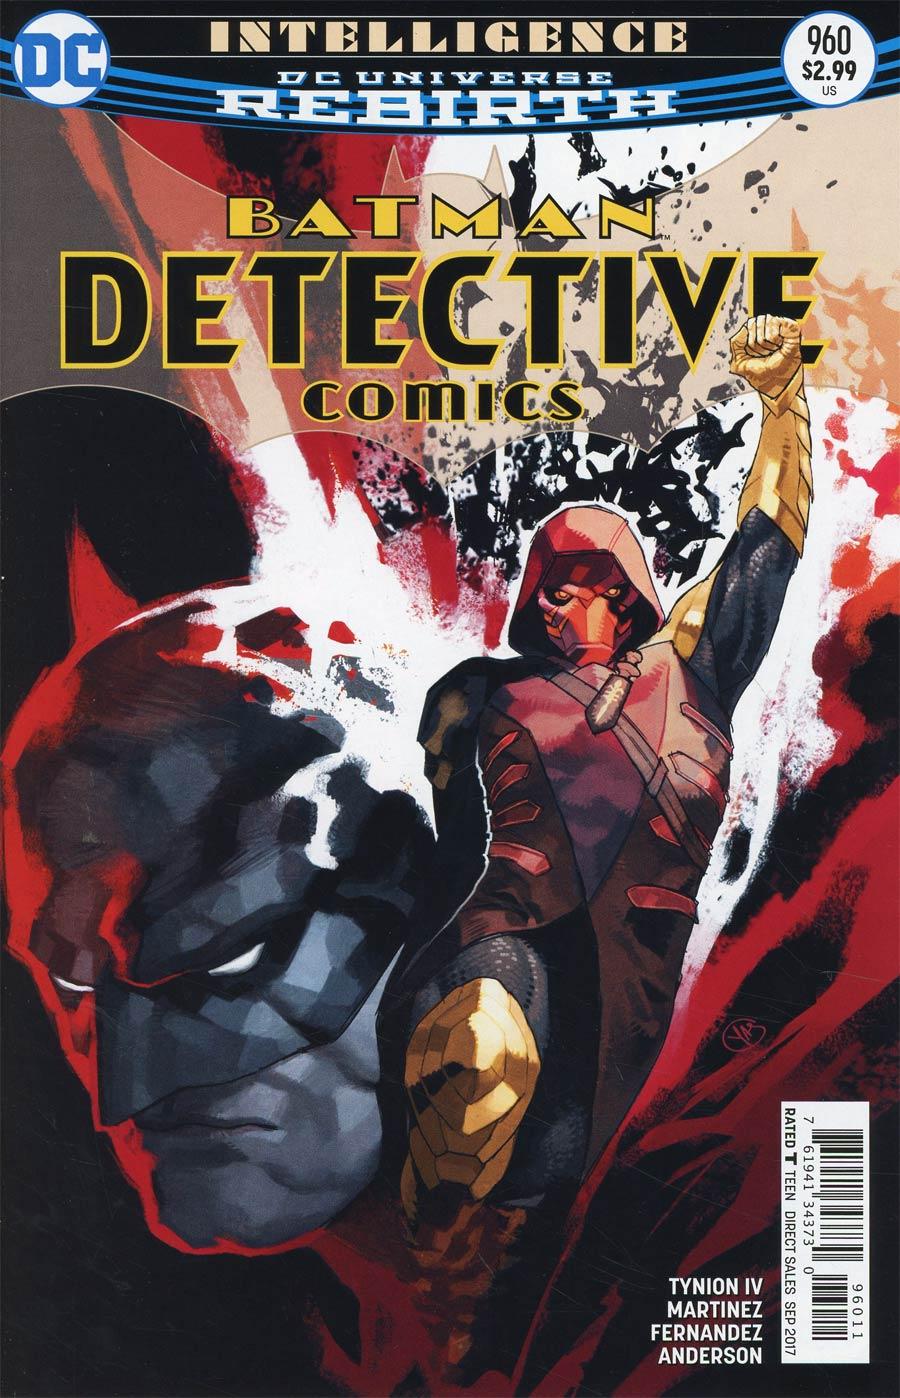 Detective Comics Vol. 2 #960